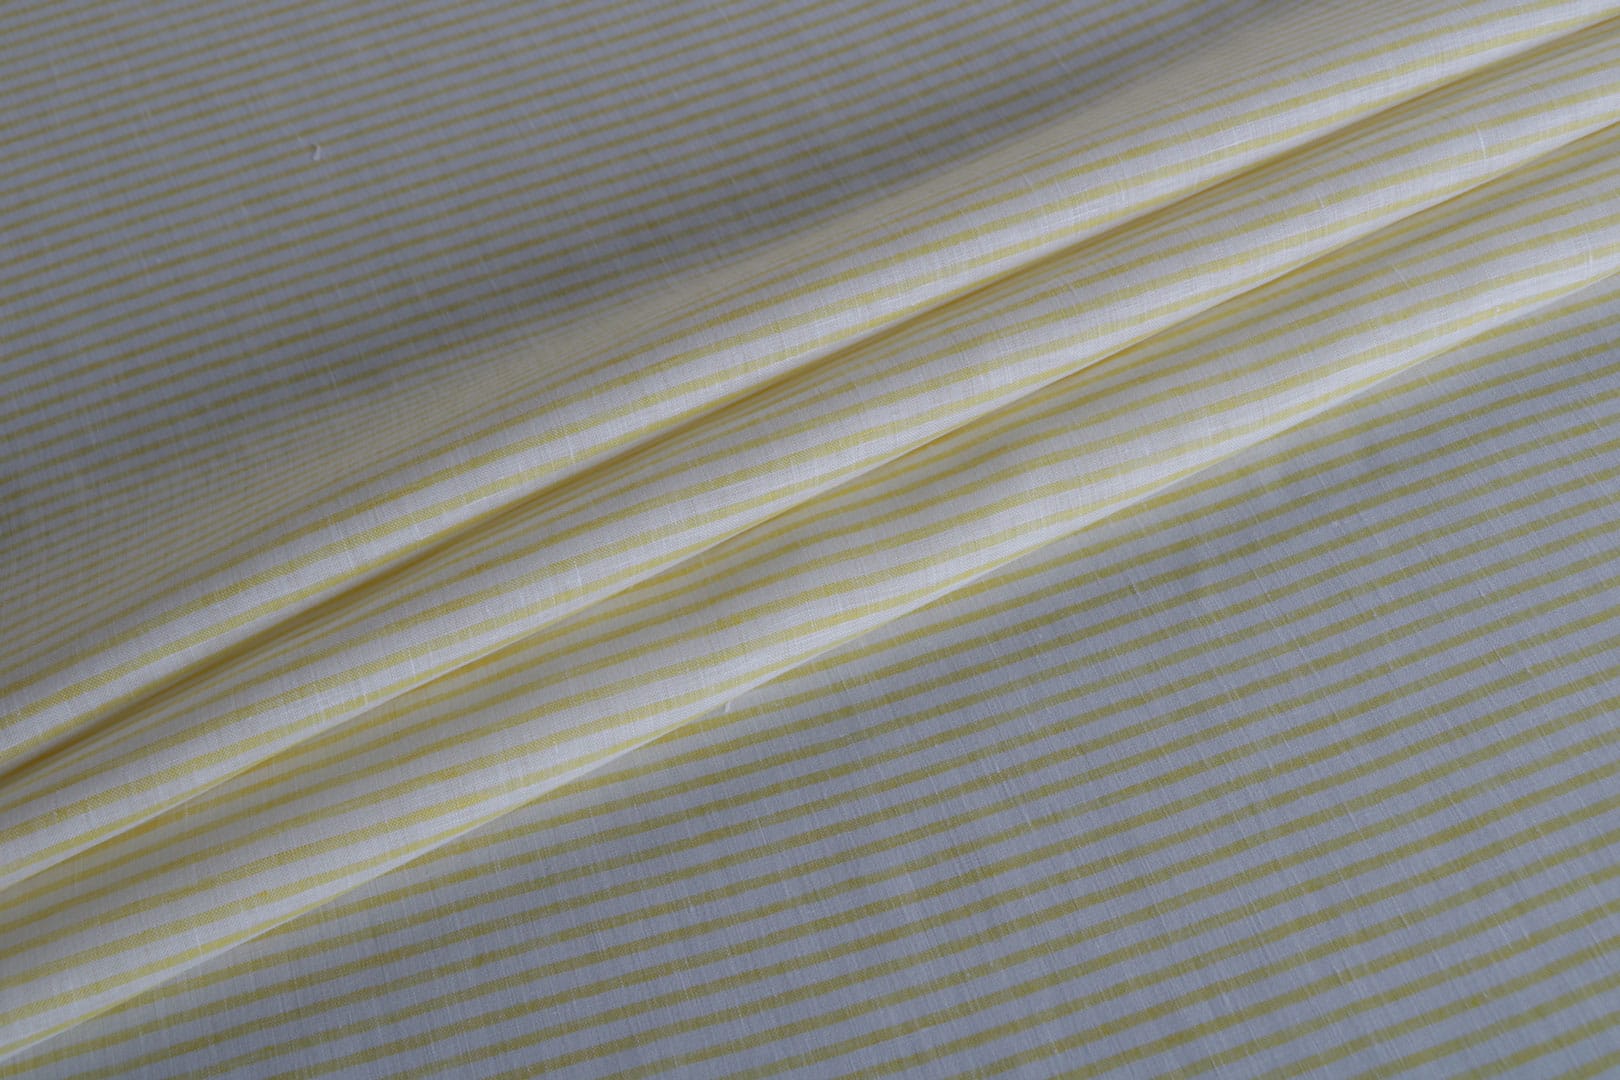 Tessuto Chambray Bianco, Giallo in Lino per abbigliamento